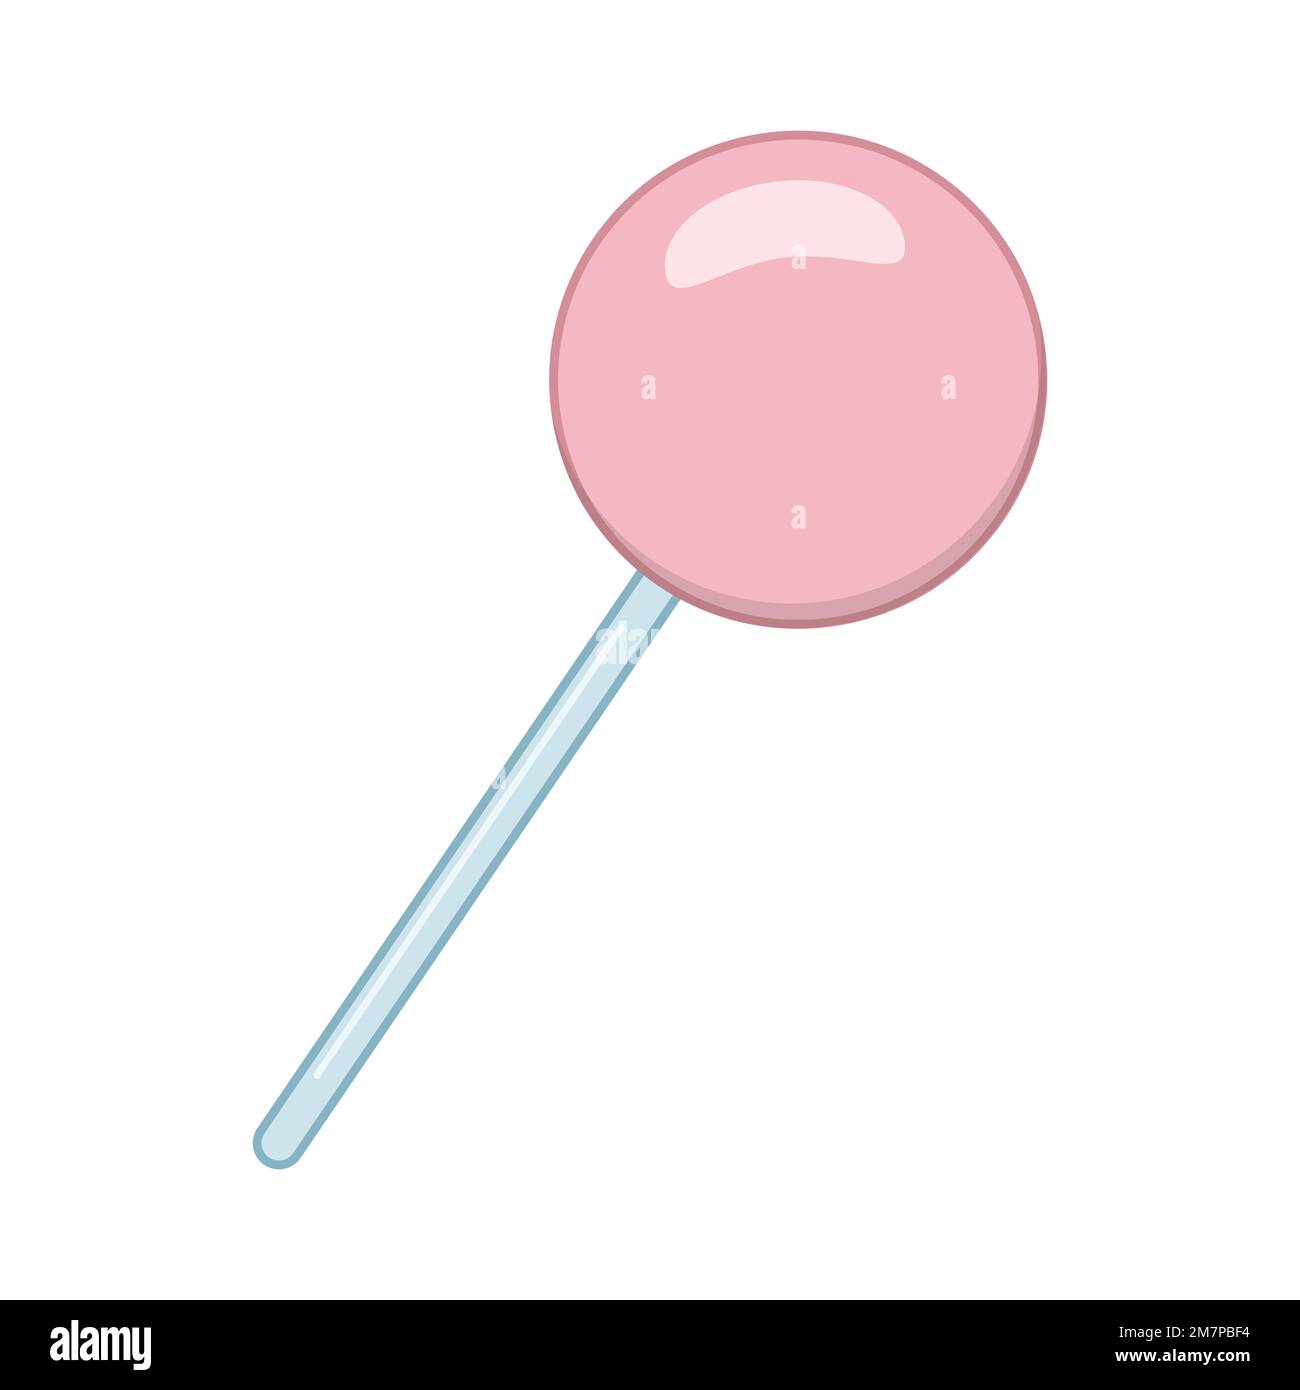 Immagine di un lollipop rosa, piatto, stile cartone animato Immagine e  Vettoriale - Alamy